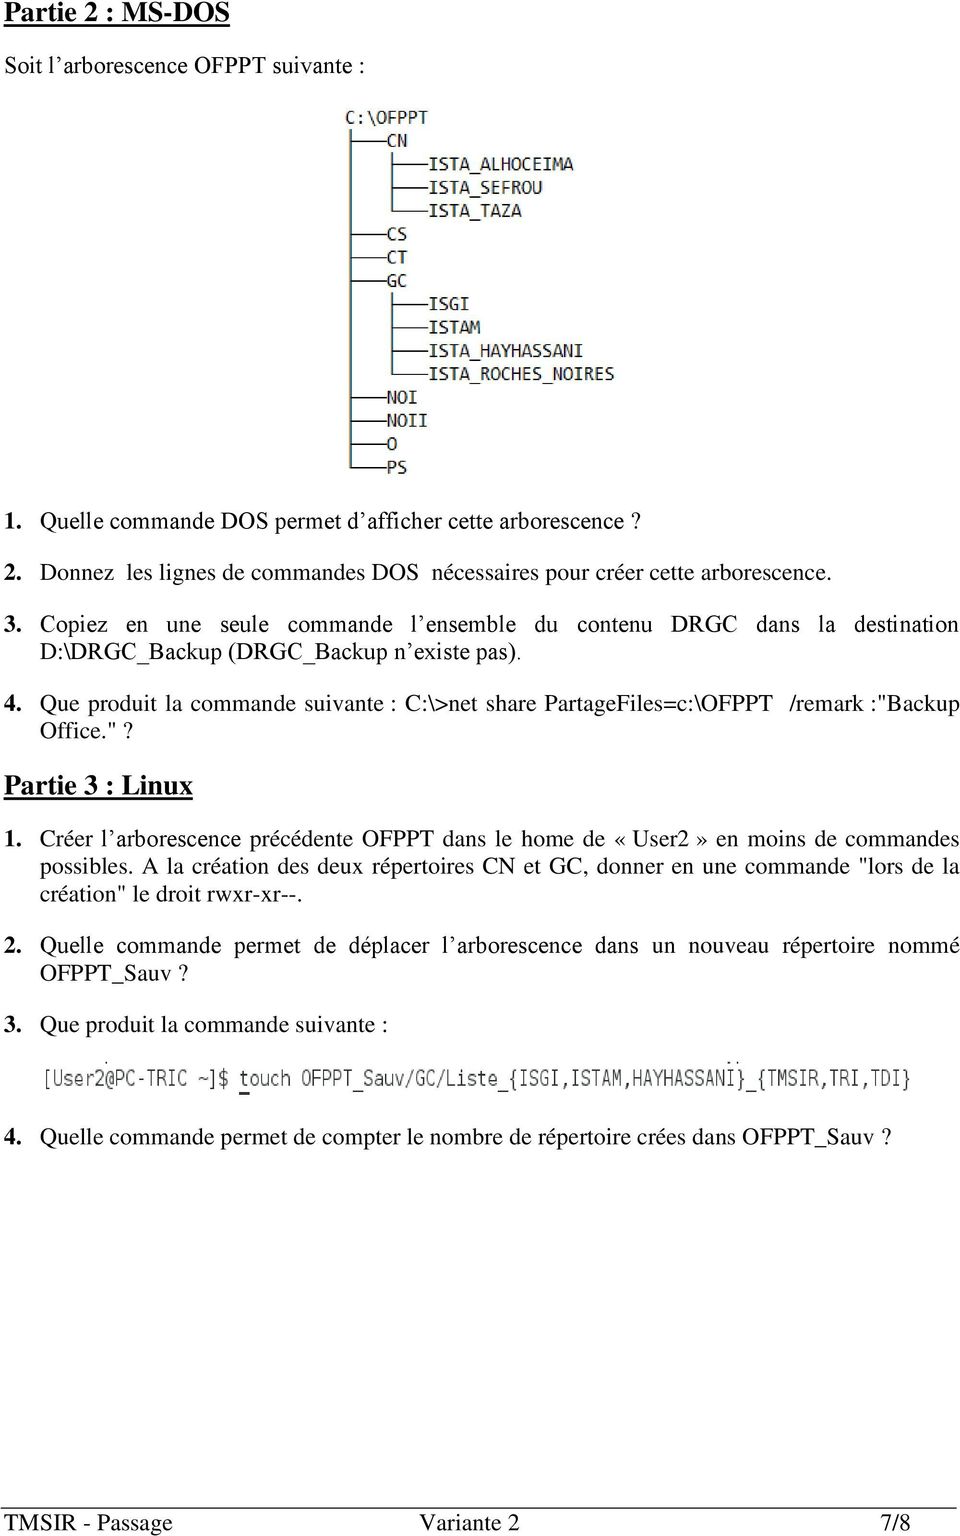 Que produit la commande suivante : C:\>net share PartageFiles=c:\OFPPT /remark :"Backup Office."? Partie 3 : Linux 1.